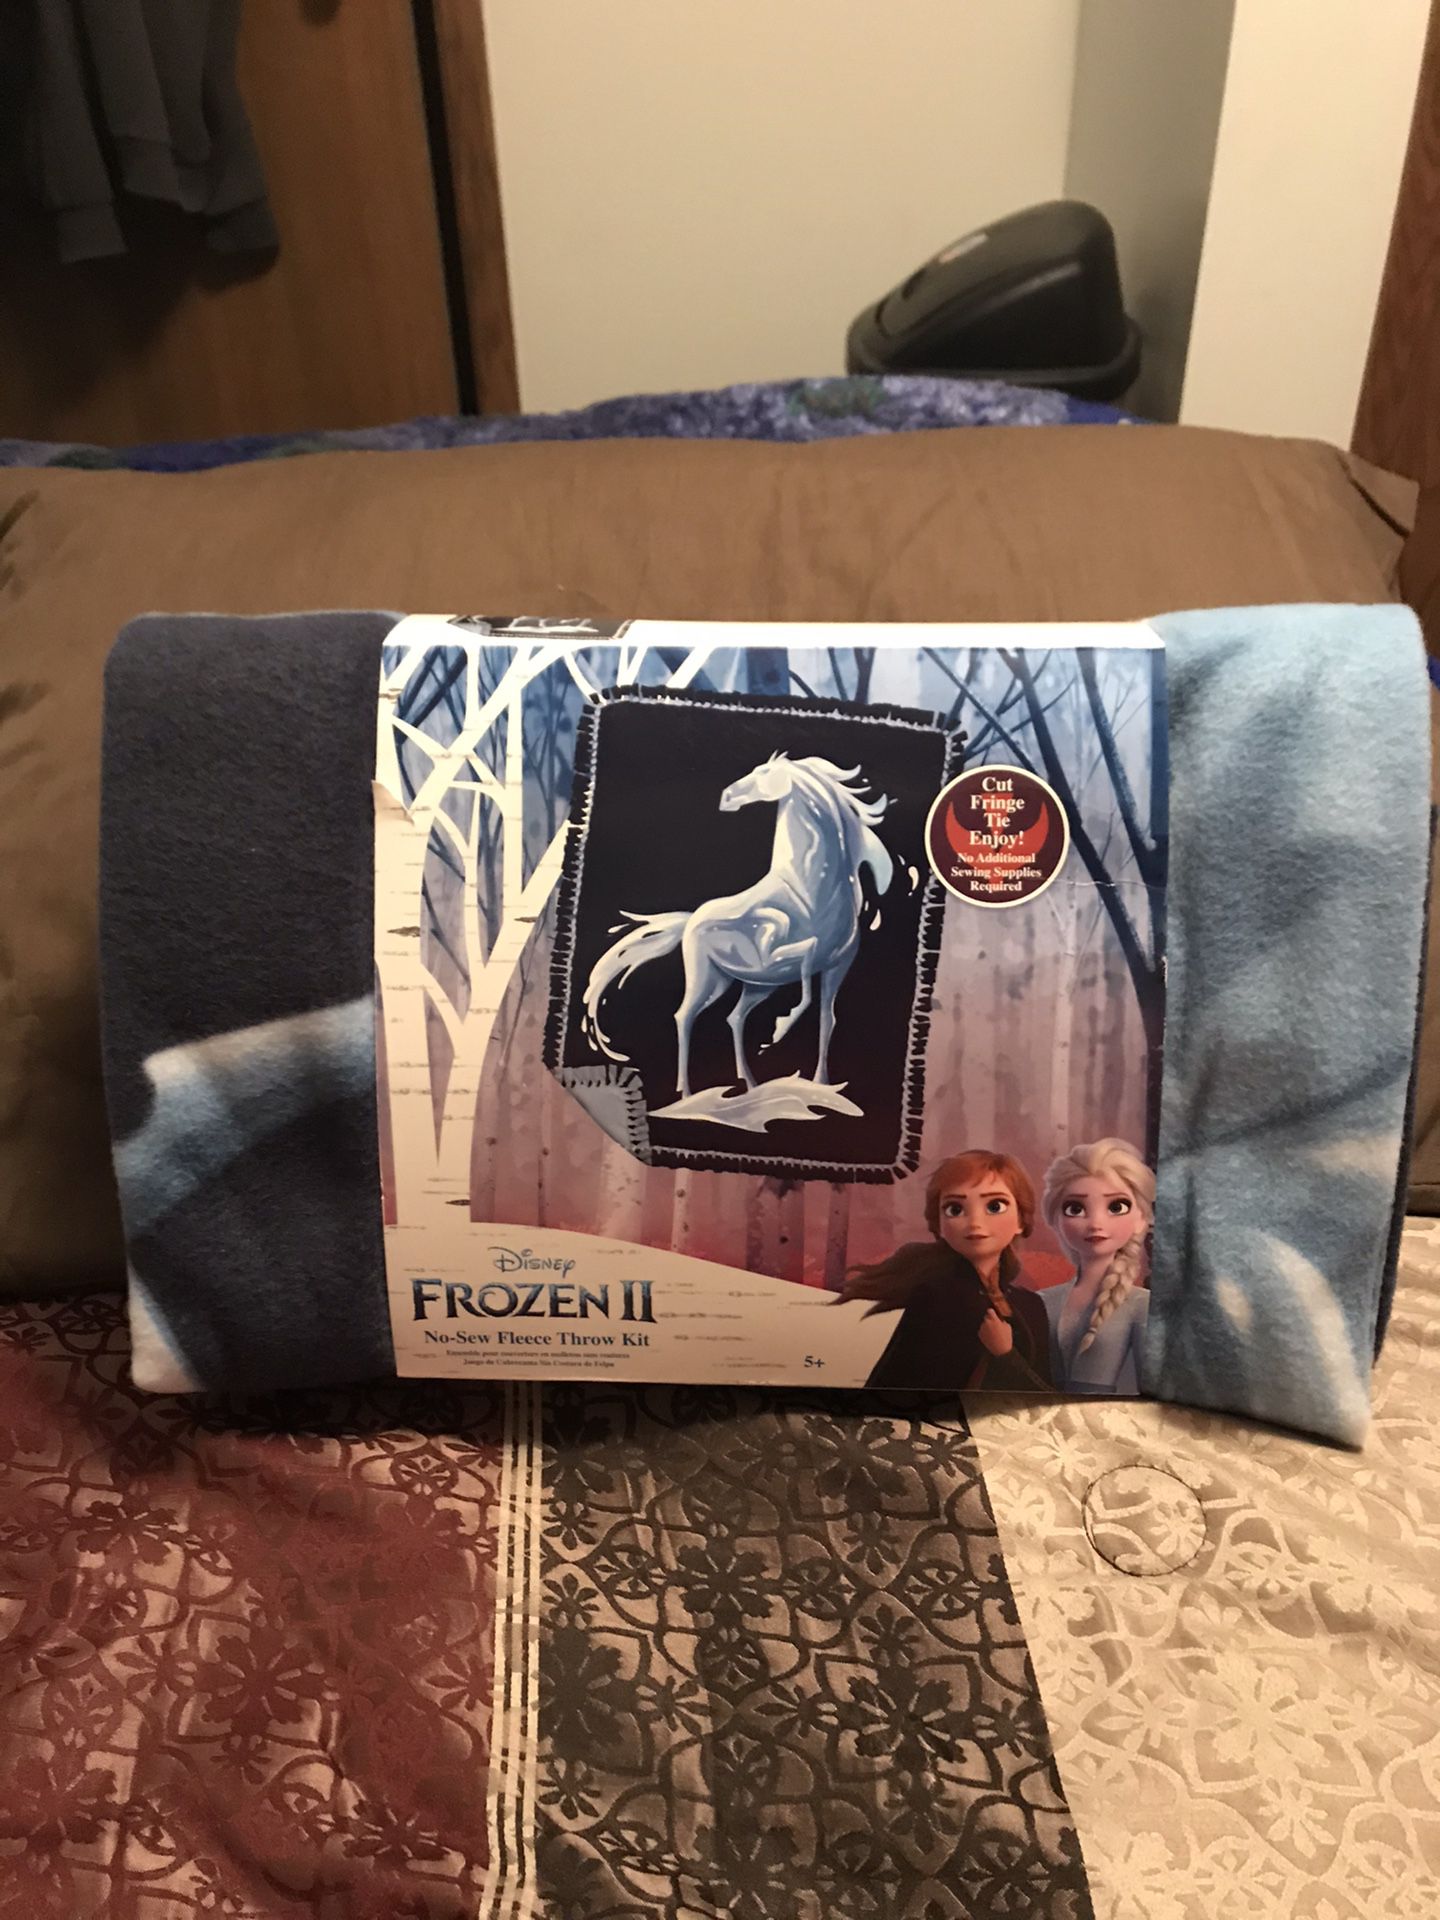 Disney’s Frozen II Knokk No Sew Fleece Throw Kit